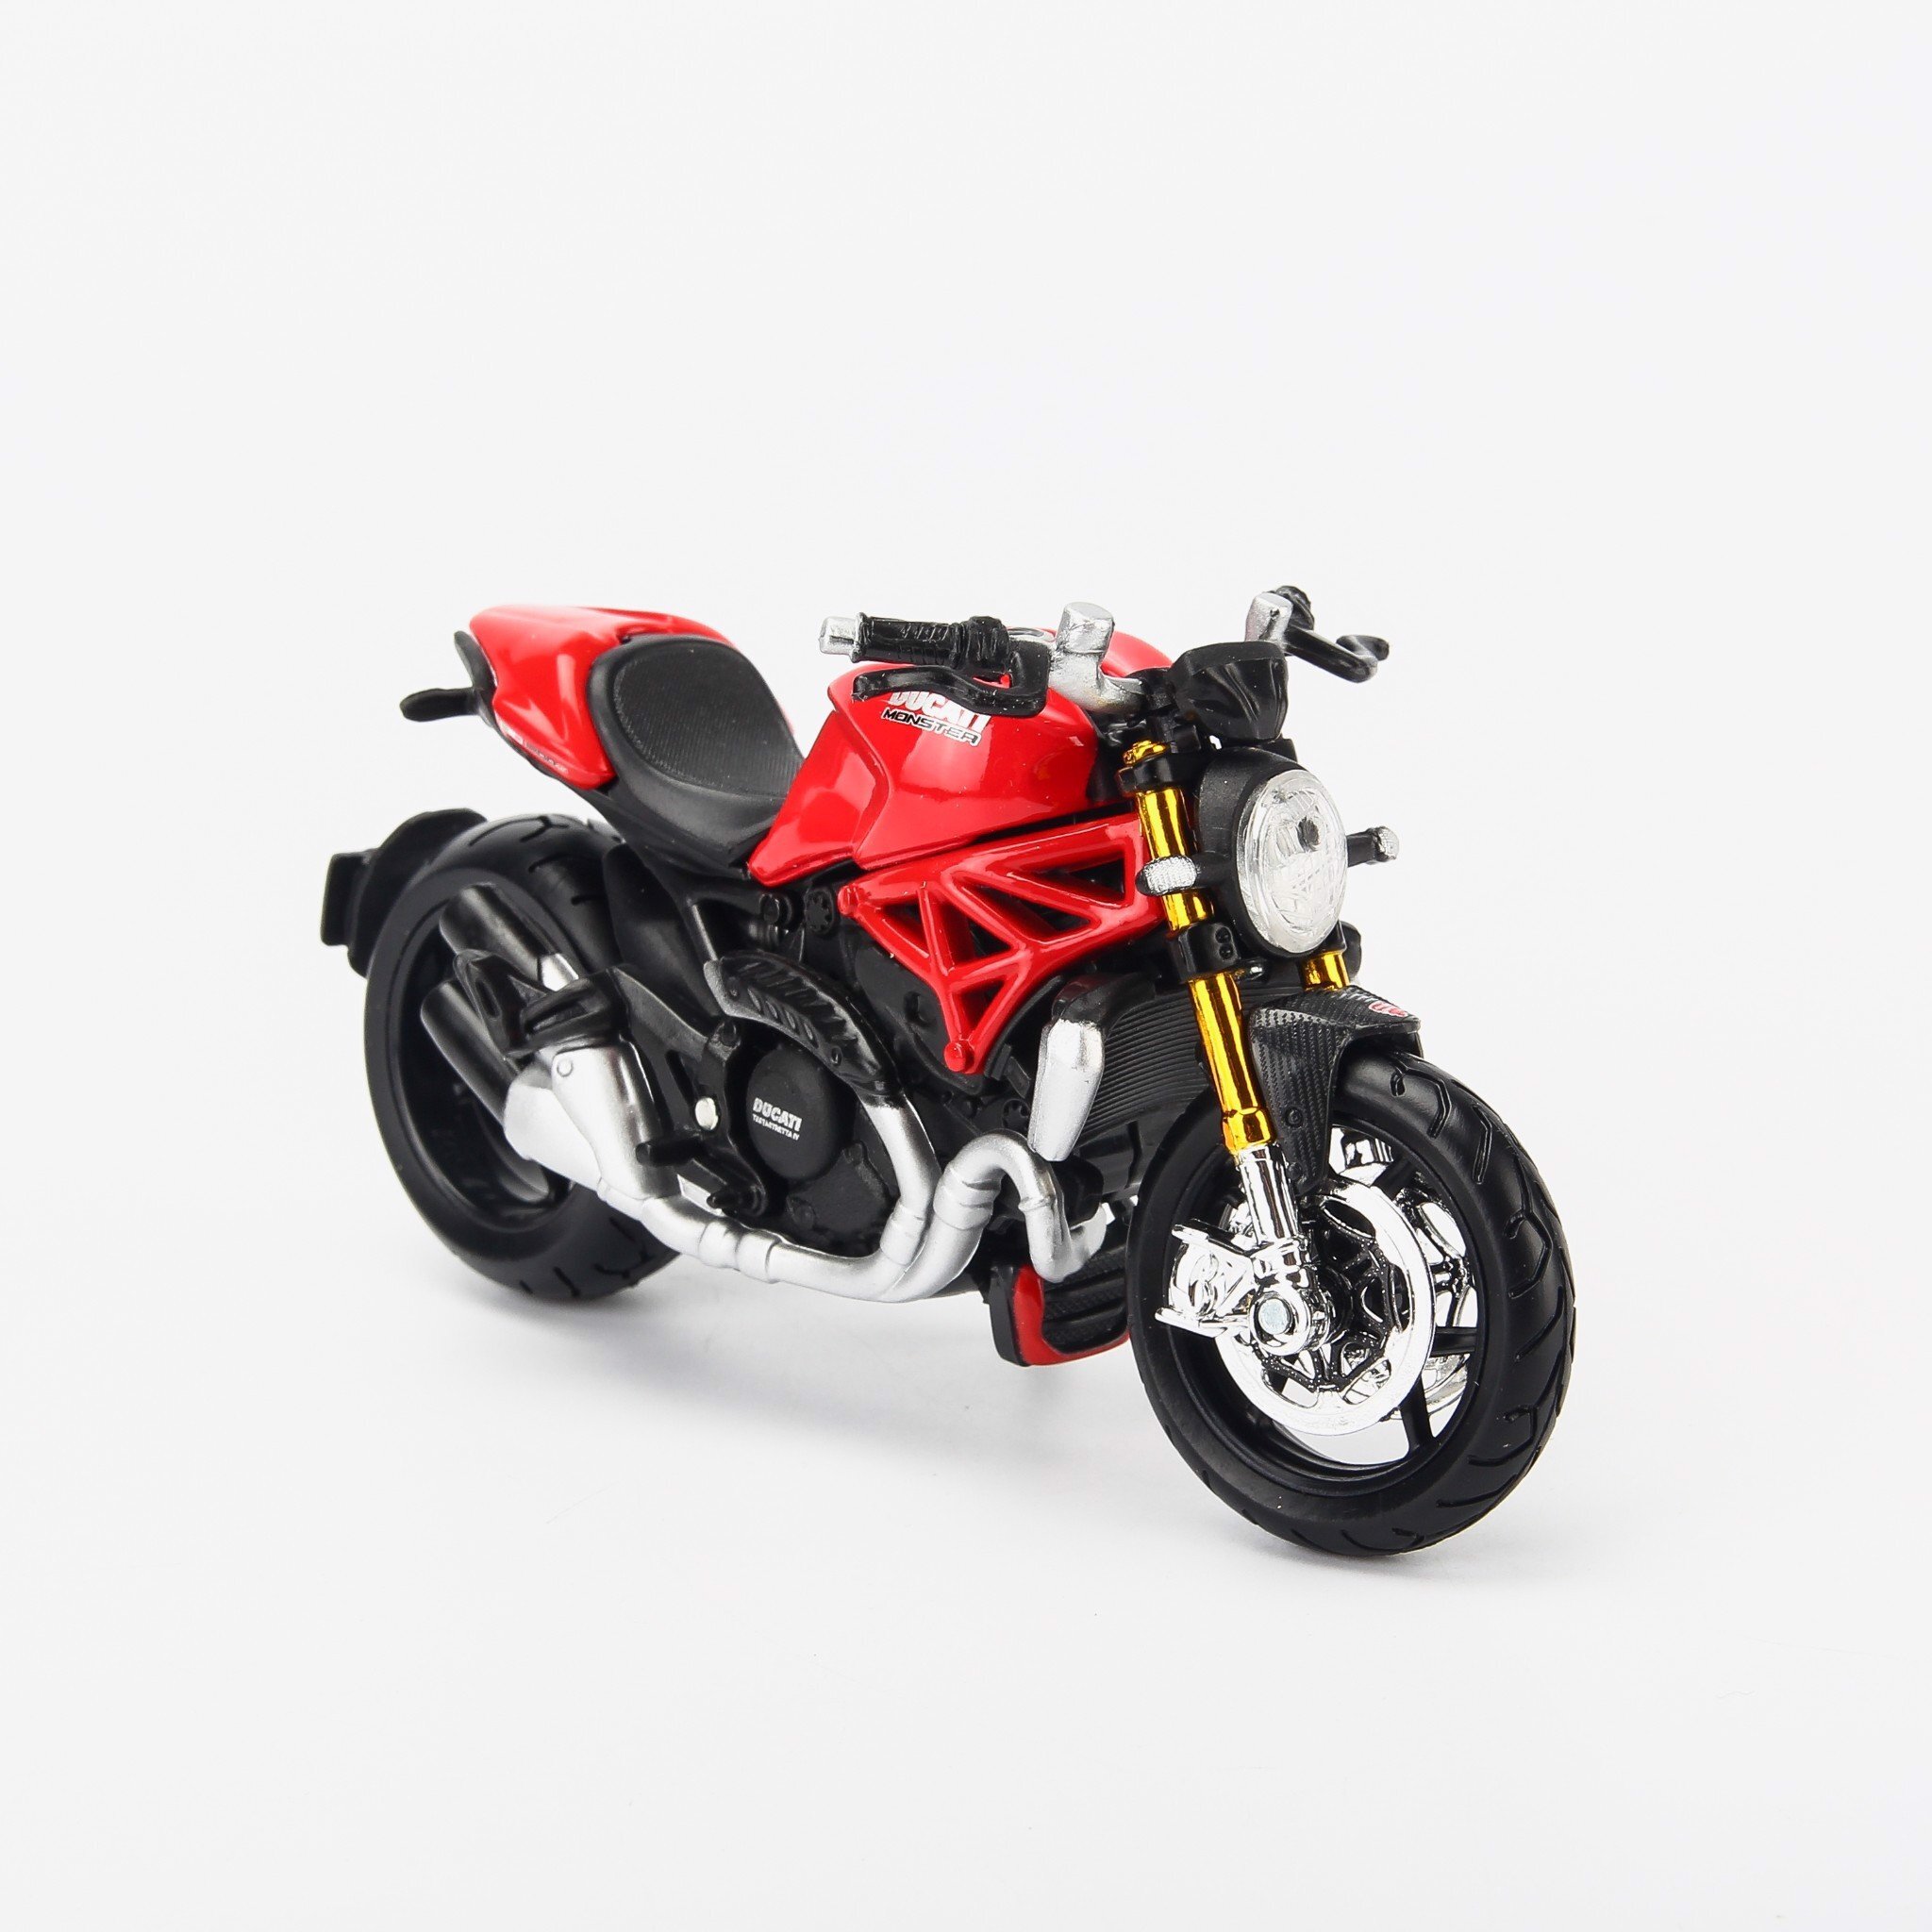 Mô hình xe mô tô Ducati Monster 1200s 1:18 Maisto